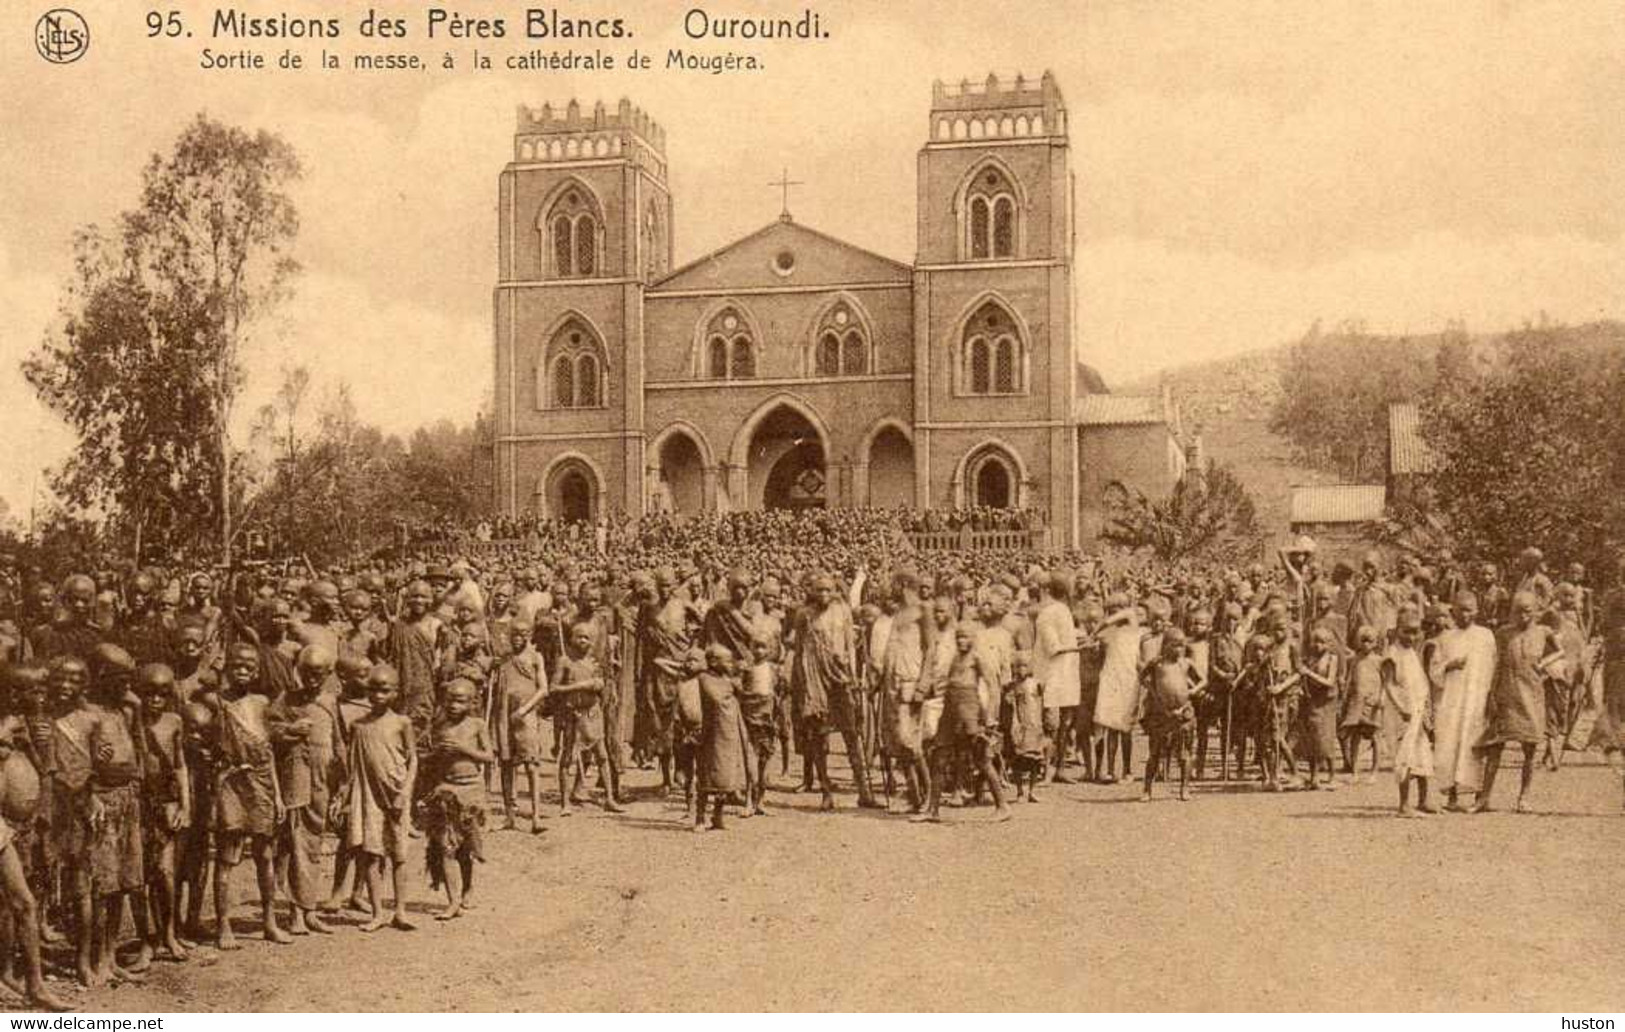 OUROUNDI - Missions Des Pères Blancs - Sortie De La Messe - Cathédrale De Mougéra - Rwanda